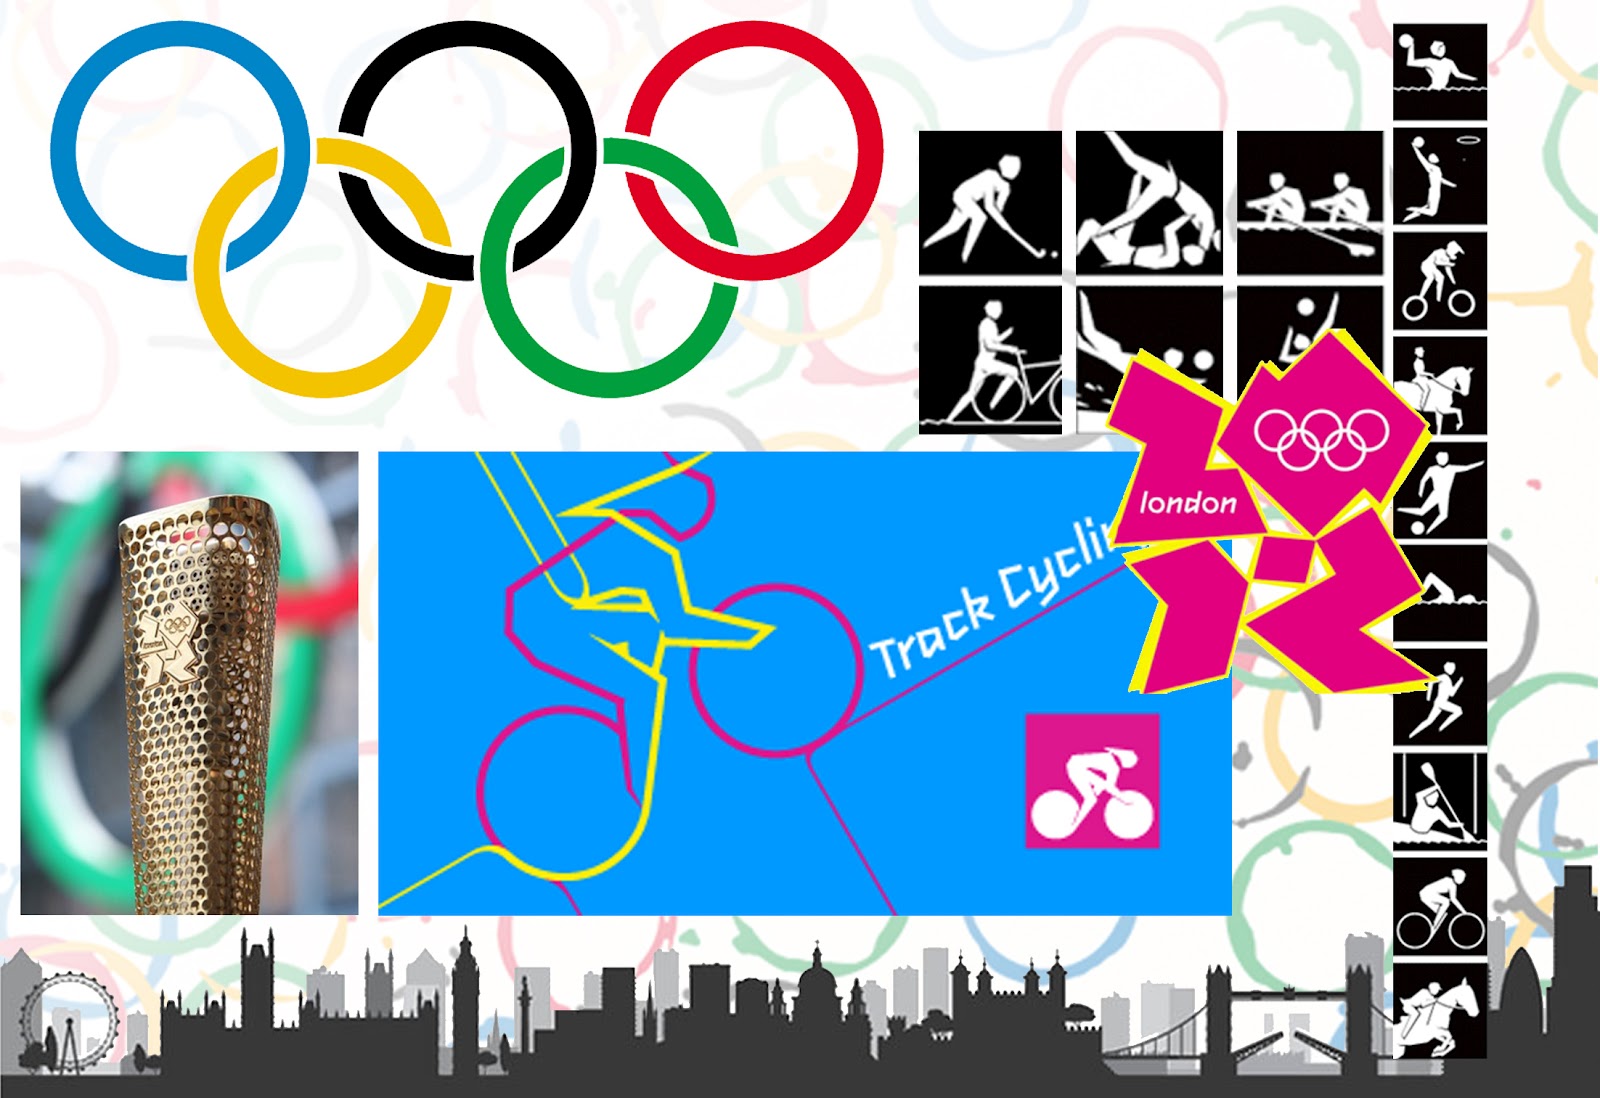 http://1.bp.blogspot.com/-aLtbzPw07xE/T_i7p59SZTI/AAAAAAAAA4Q/b8i1R2SP9QU/s1600/Olympic+Wallpaper+2012.jpg